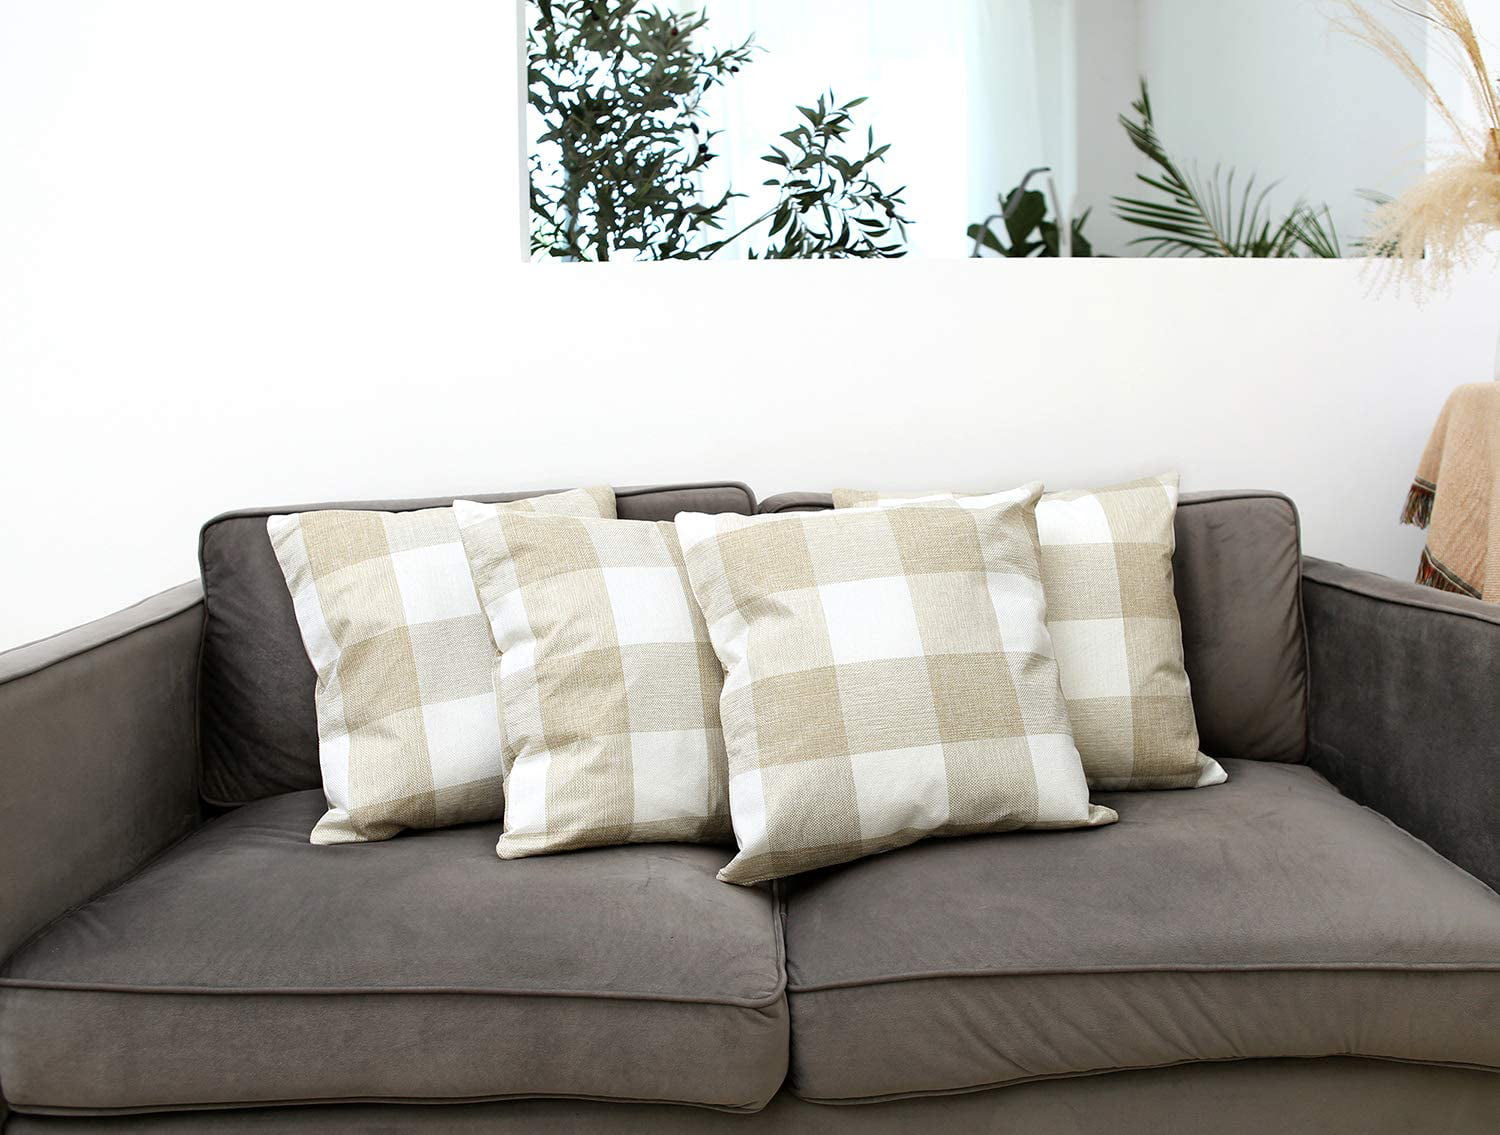 Pillowcase Home Cotton Linen Bed Decor Throw Pillow Cover Case Cushion Solid 18" 